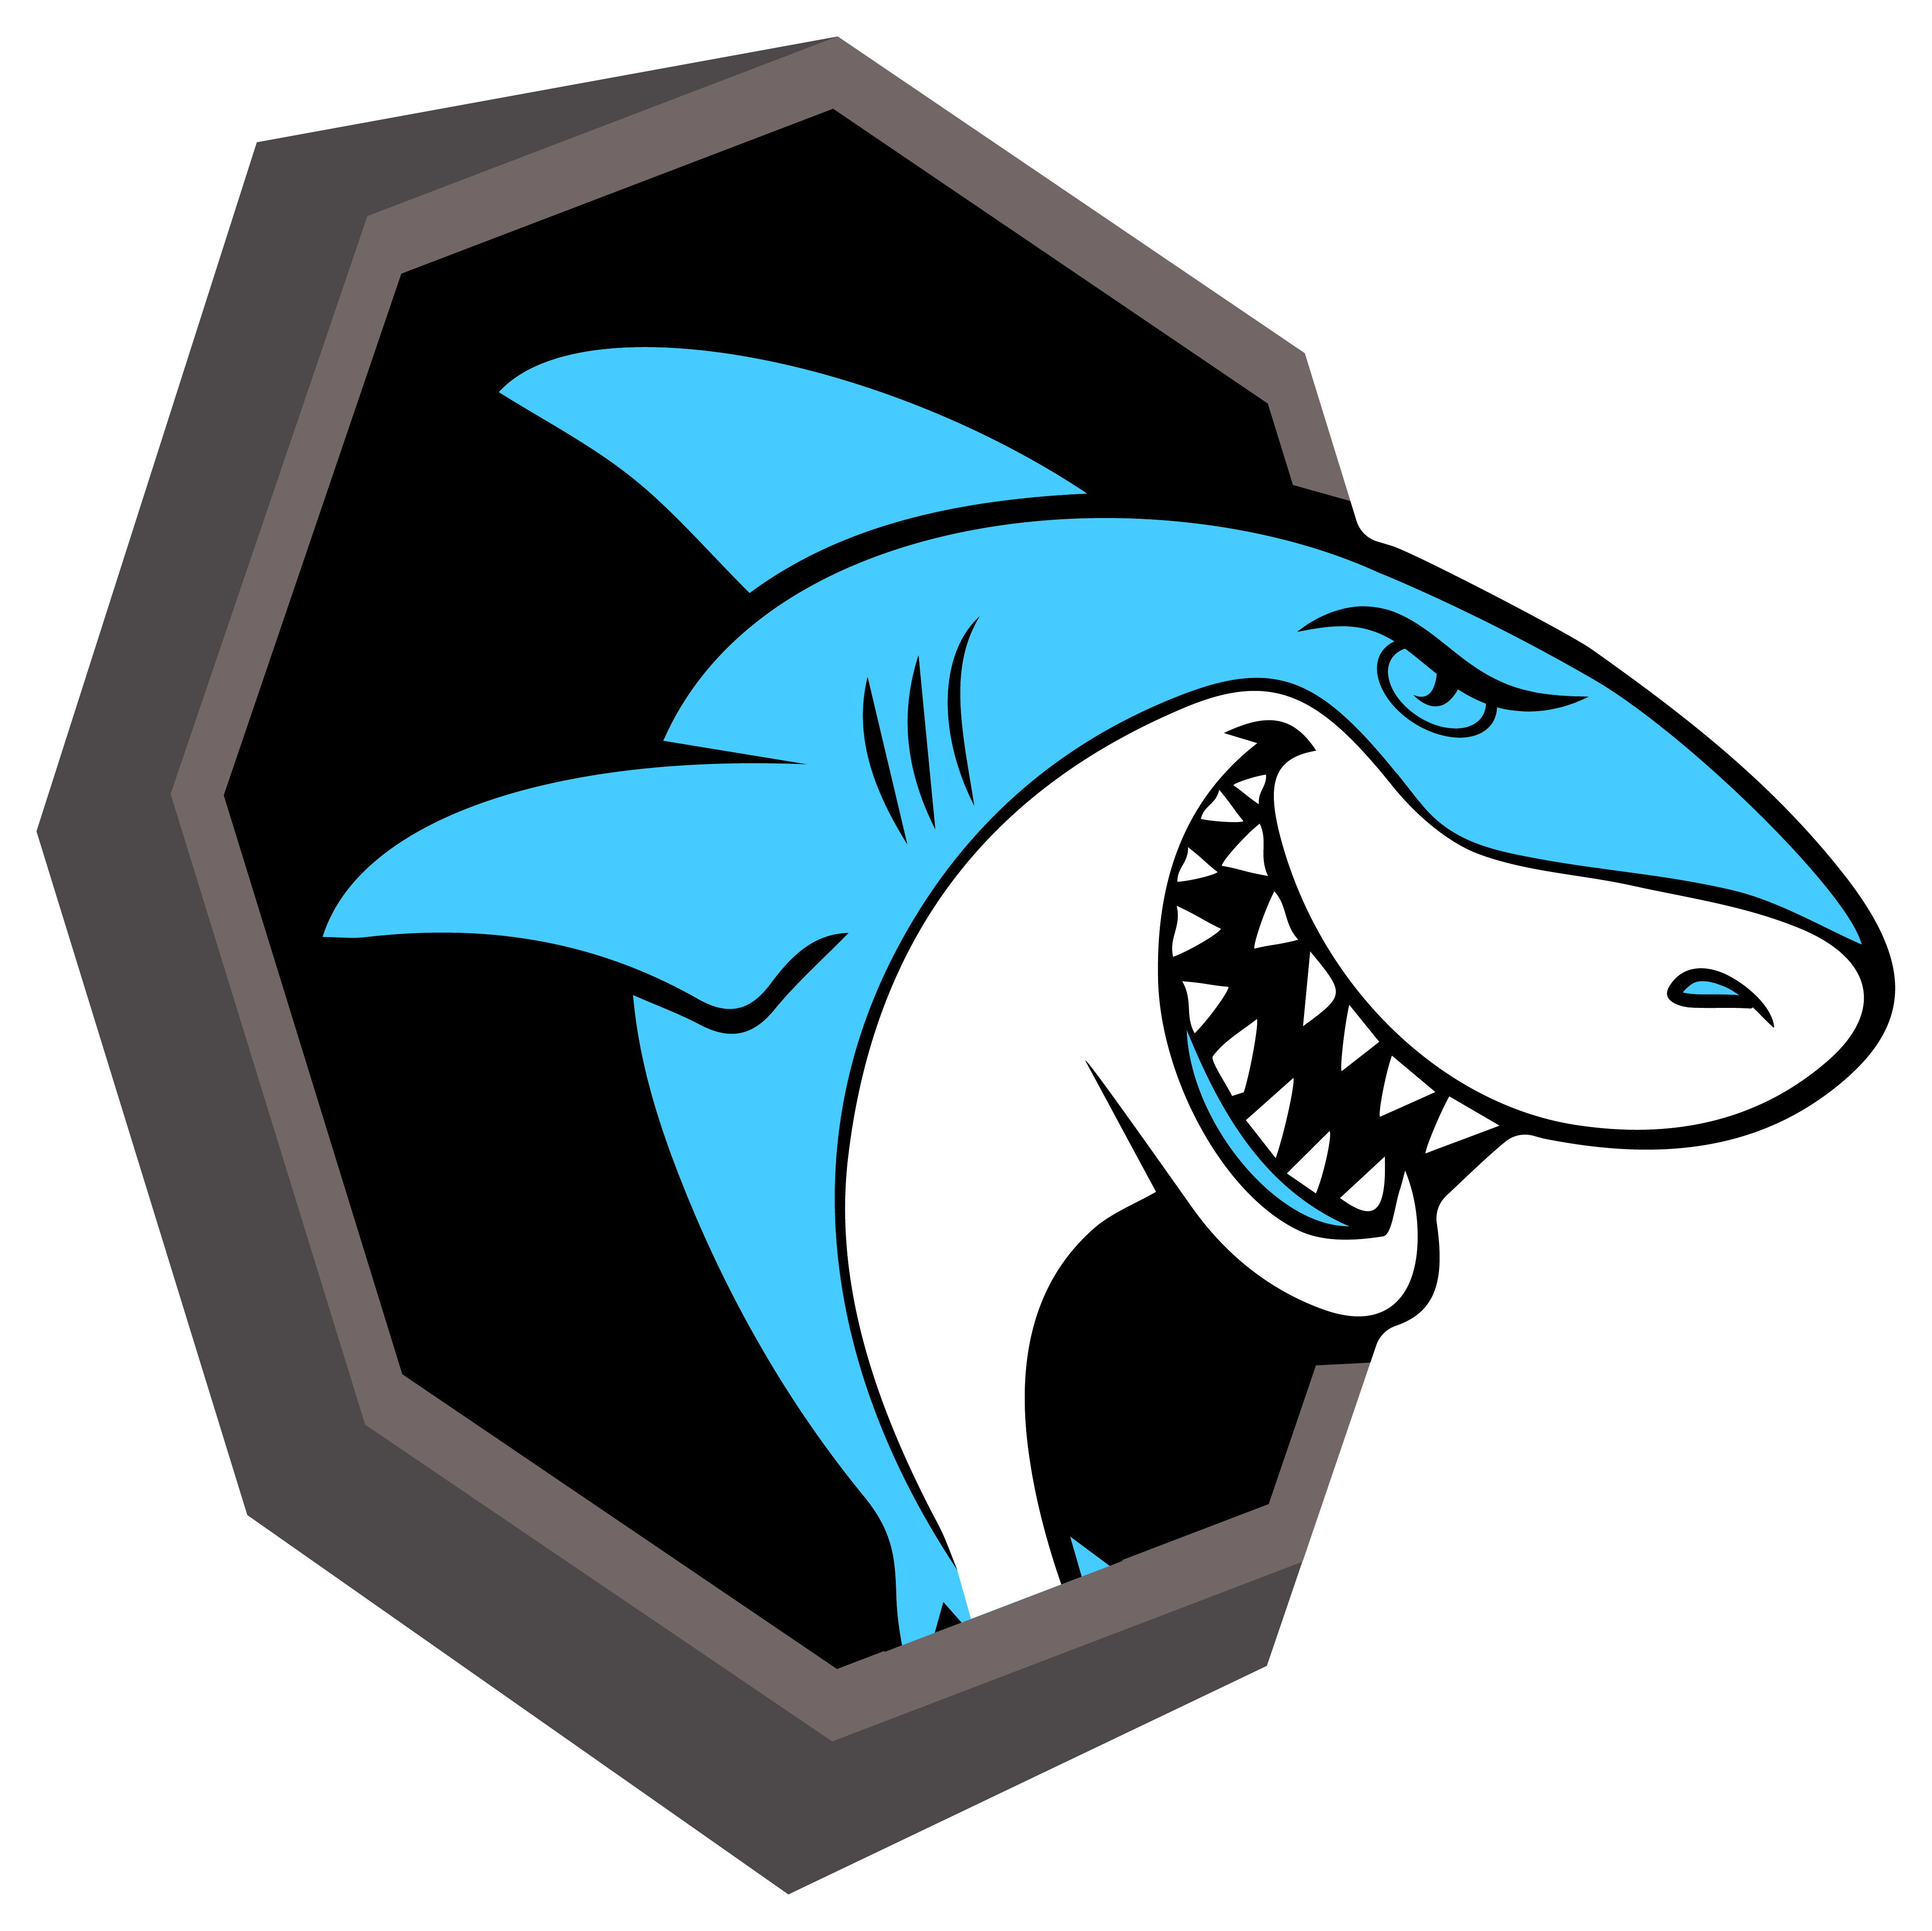 4x Aufkleber Shark Hai 6x6 cm für Auto KFZ Handy Laptop Haifisch Sticker blau